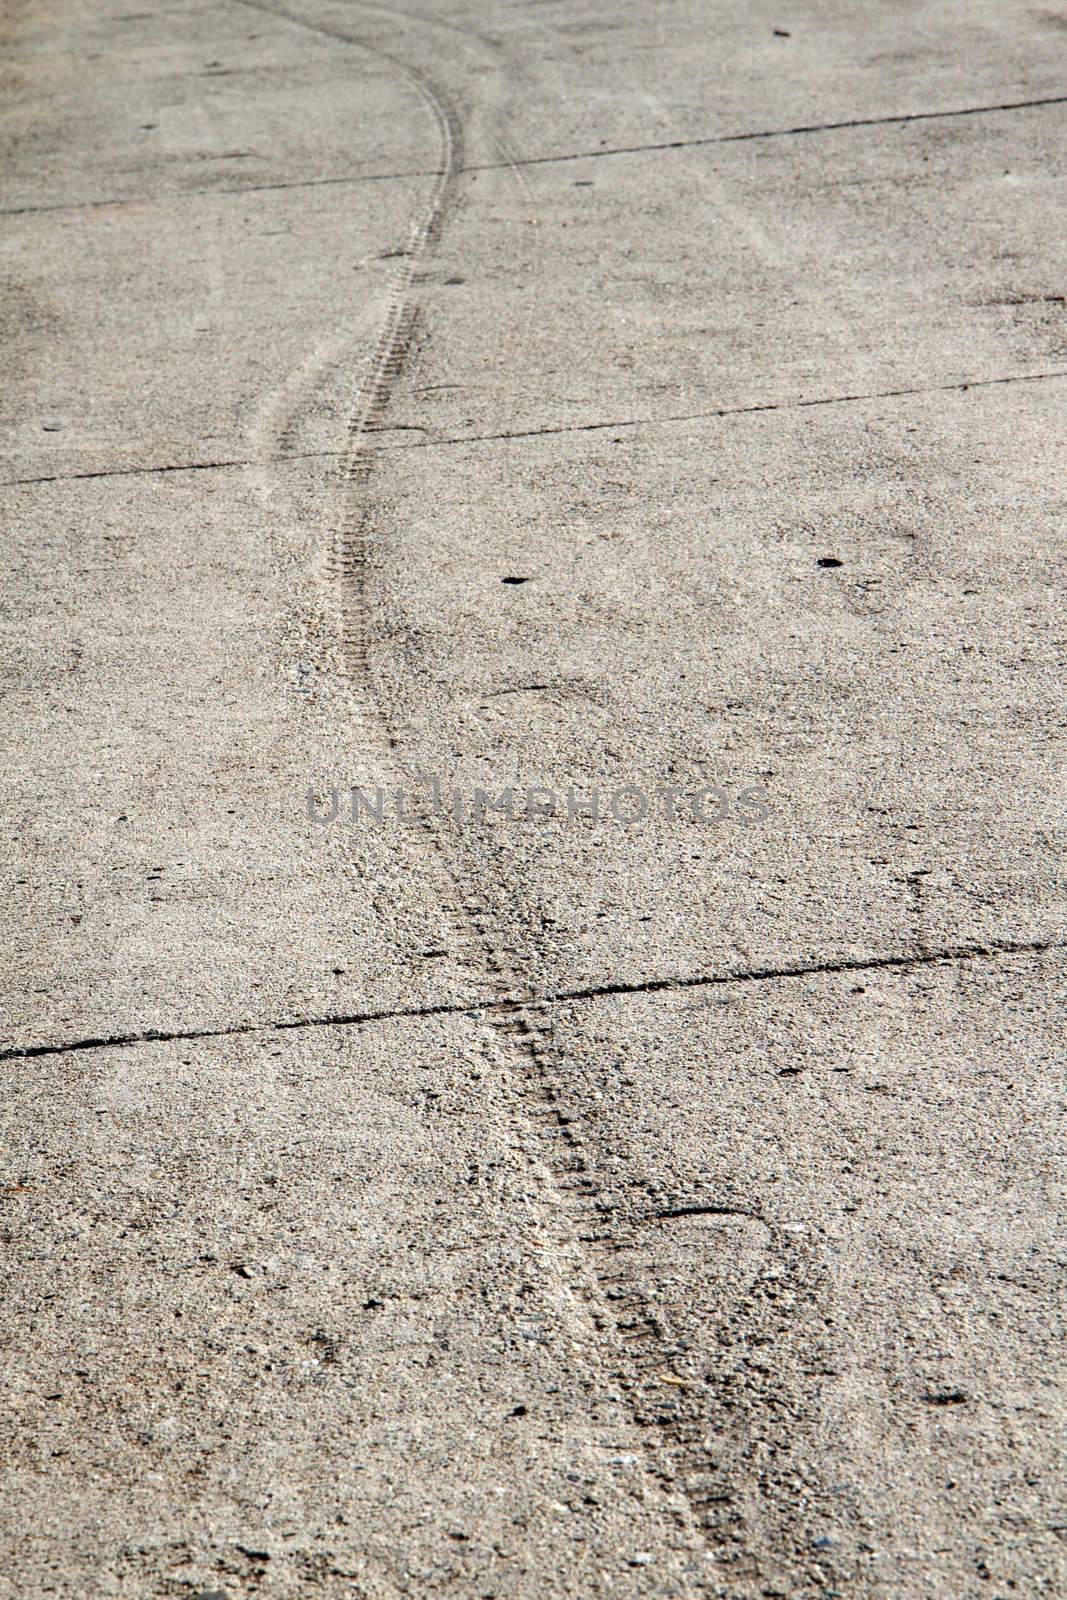 Track in cement sidewalk by bobkeenan